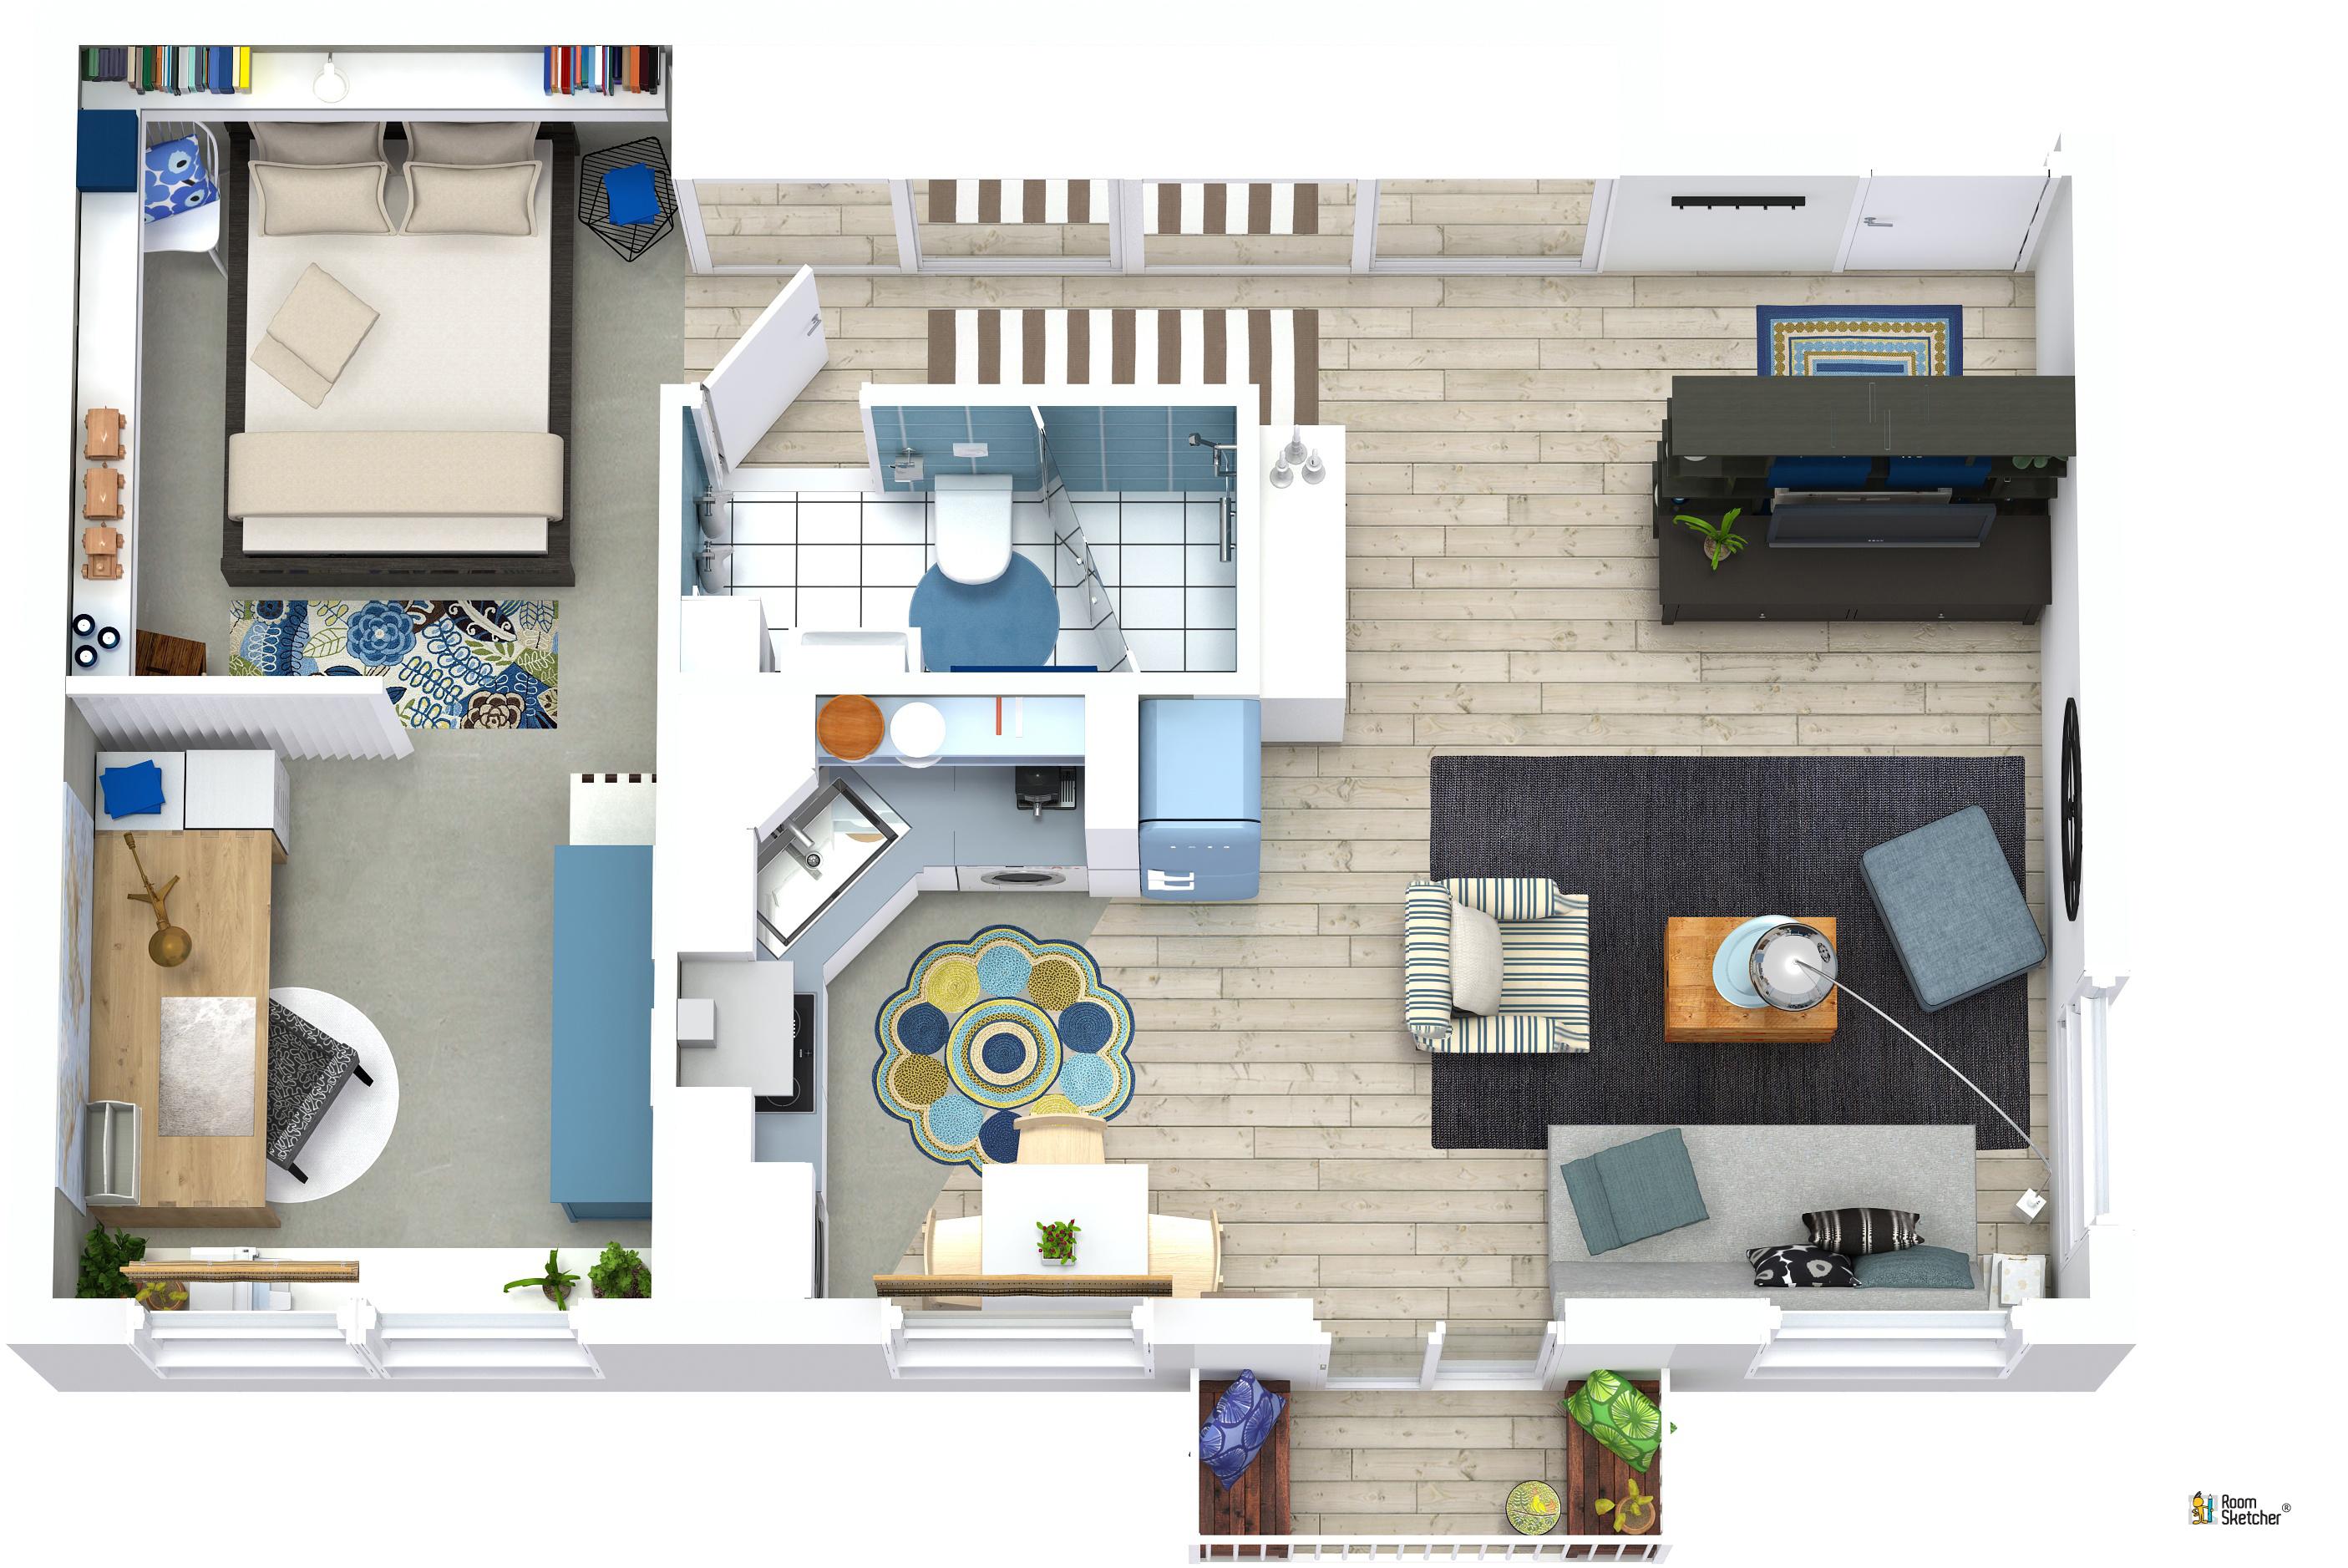 RoomSketcher Wohnidee: Kleine Wohnung mit Stauraum einrichten: 3D Grundriss #stauraum #kleinewohnungeinrichten ©RoomSketcher